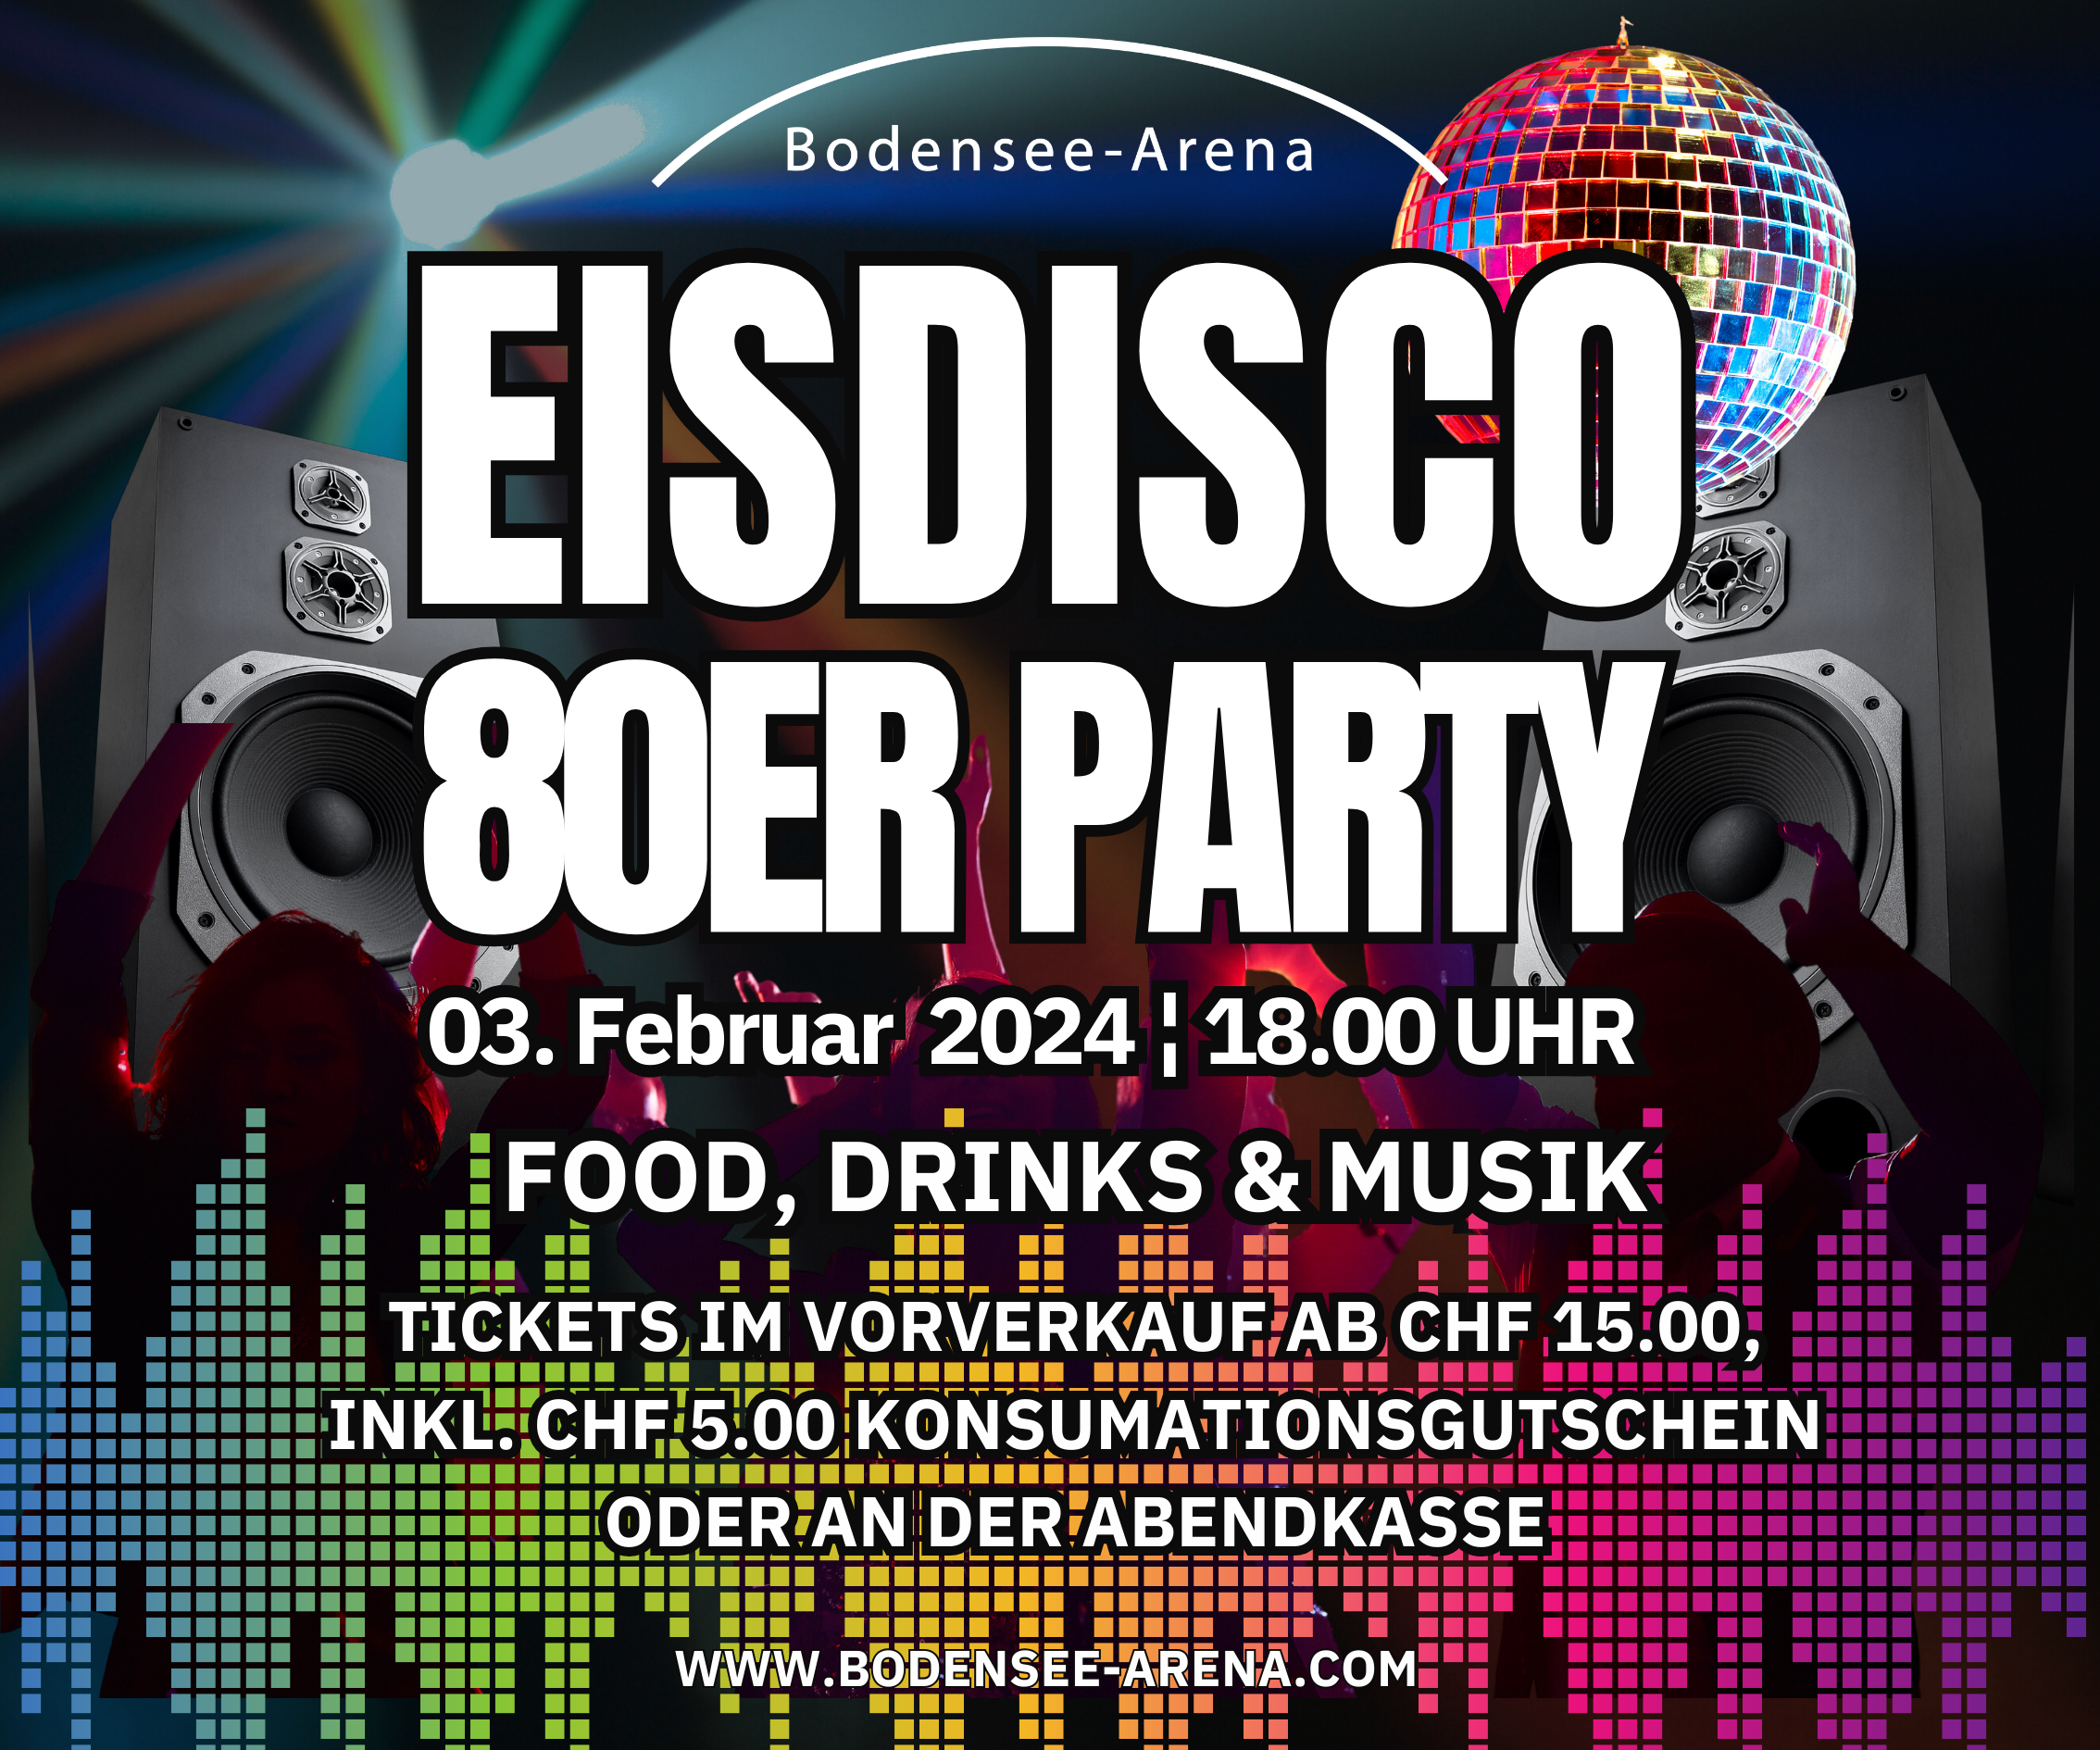 Eisdisco Partytime  "80er Party" weitere Tickets an der Abendkasse erhältlich